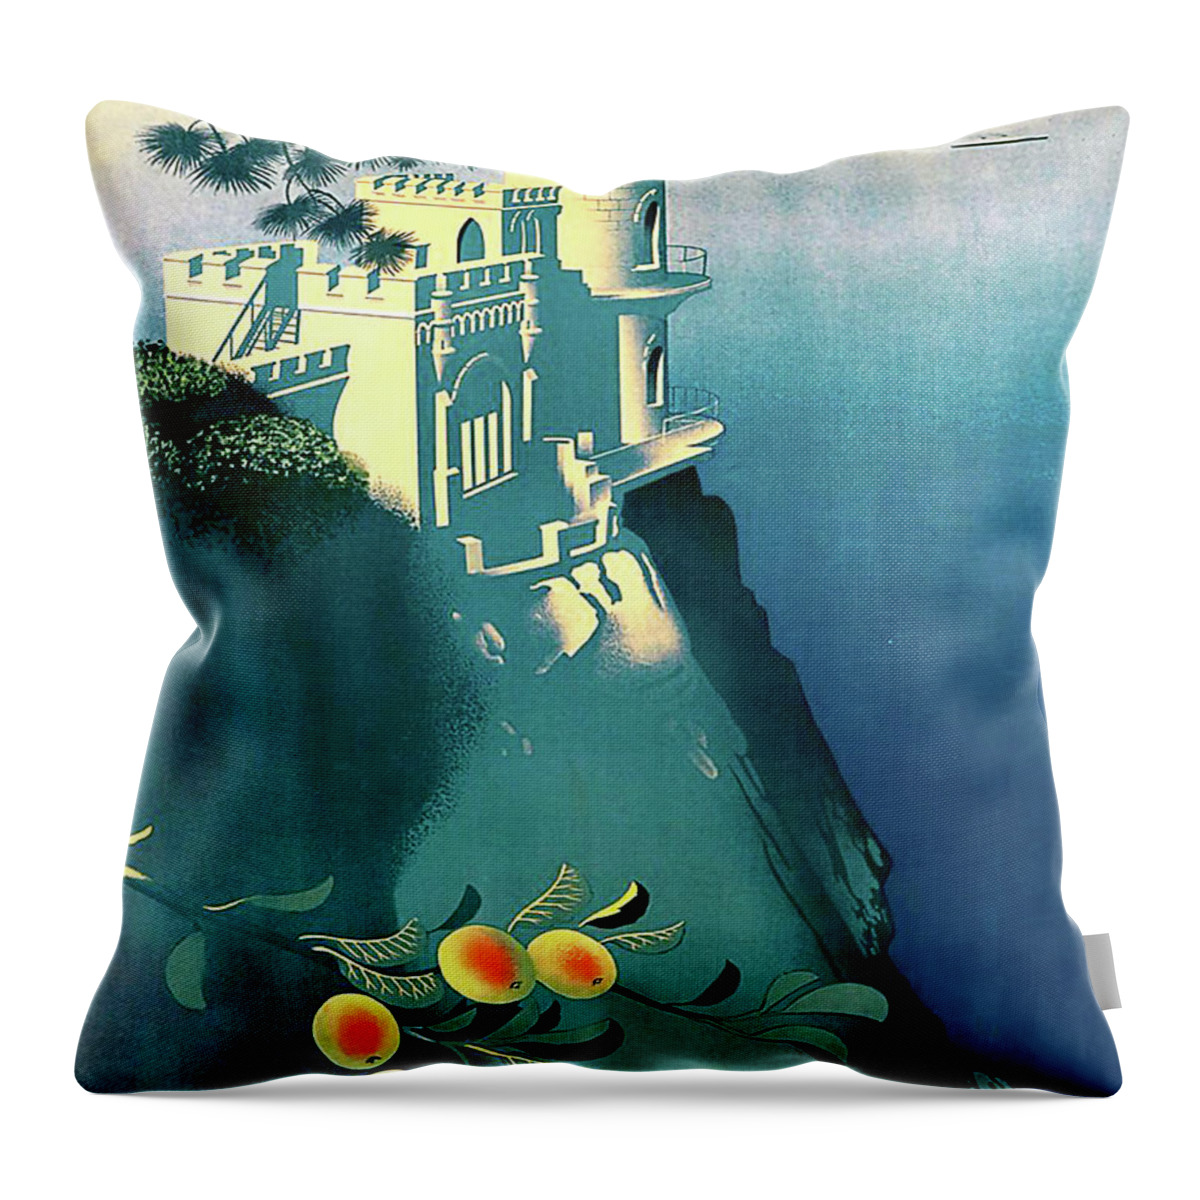 Crimea Throw Pillow featuring the digital art Crimea by Long Shot